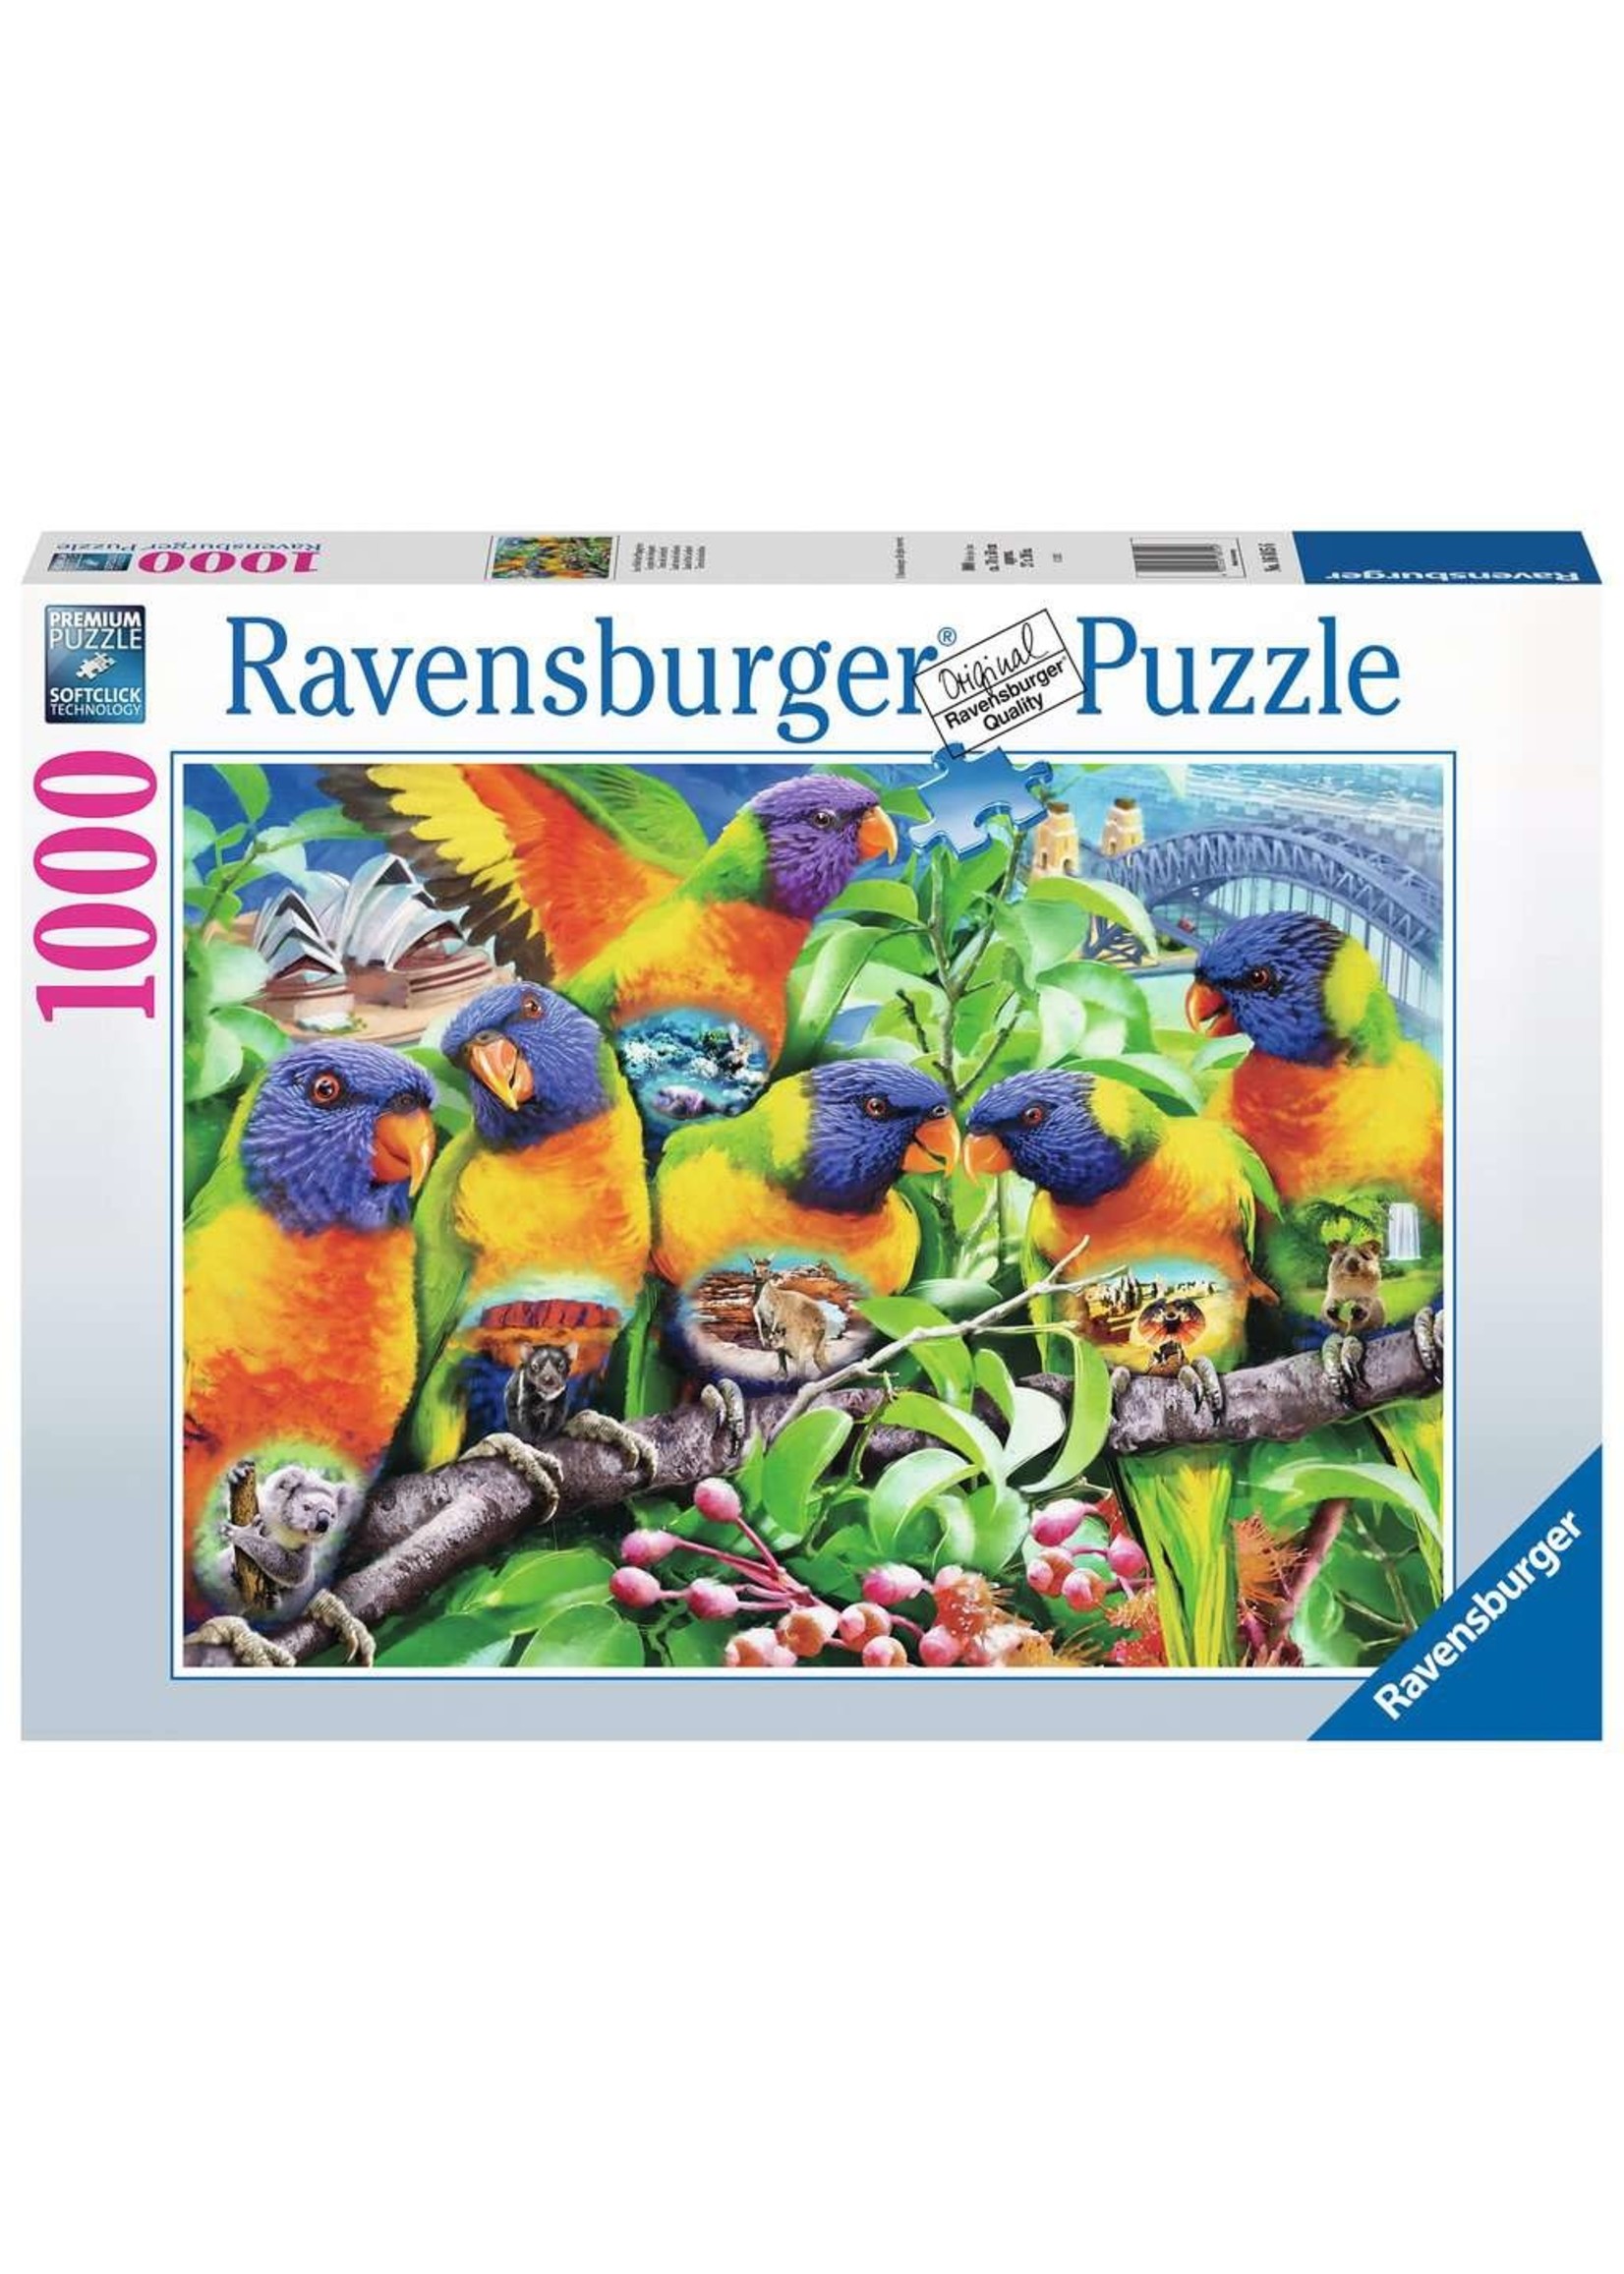 Ravensburger Puzzle Ravensburger 1000 pcs - Land of the lorikeet